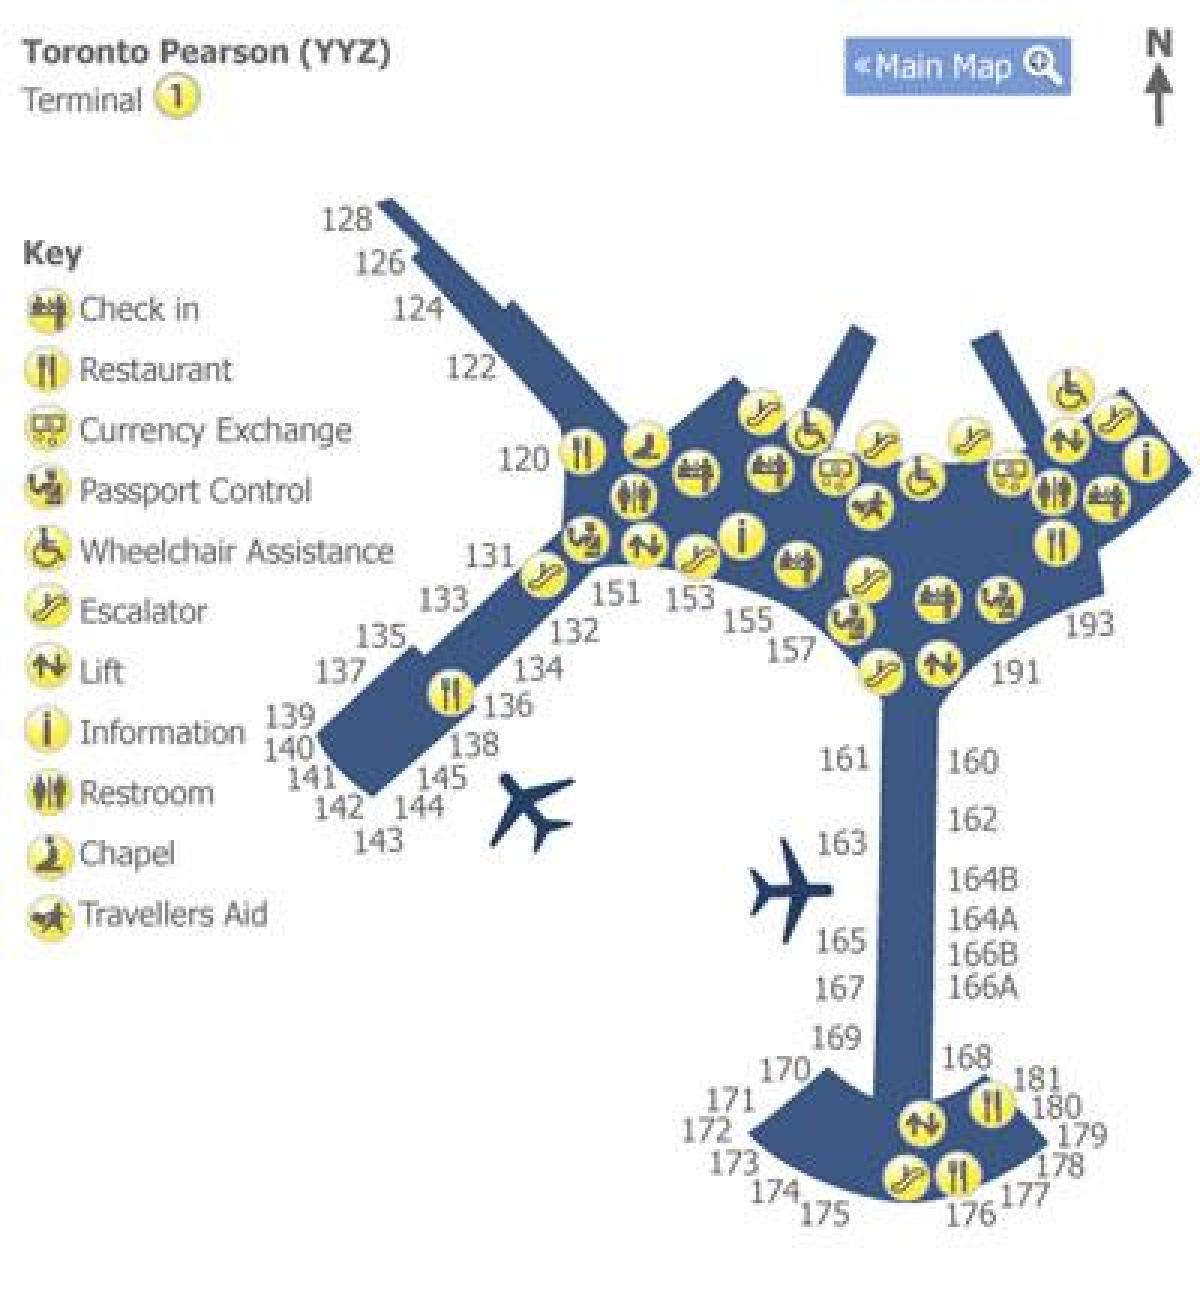 नक्शे के टोरंटो पियर्सन हवाई अड्डे के टर्मिनल 1